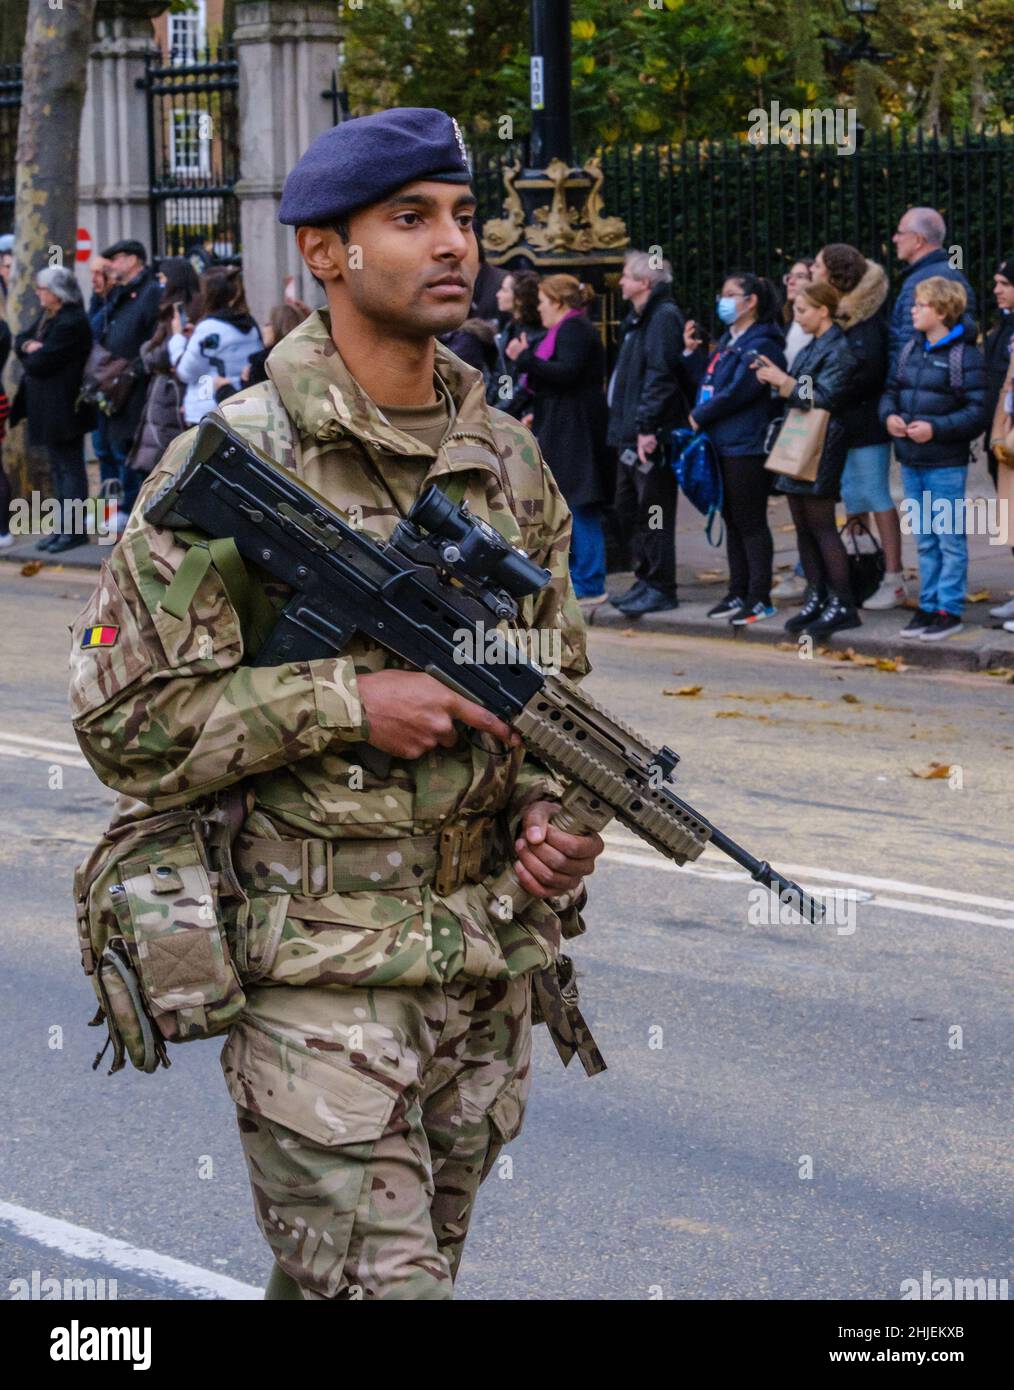 Soldat aus dem Bataillon 103 Königliche Elektro- und Maschineningenieure in Tarnuniform mit SA80-A2 Einzelwaffen auf der Show 2021 des Oberbürgermeisters. Stockfoto